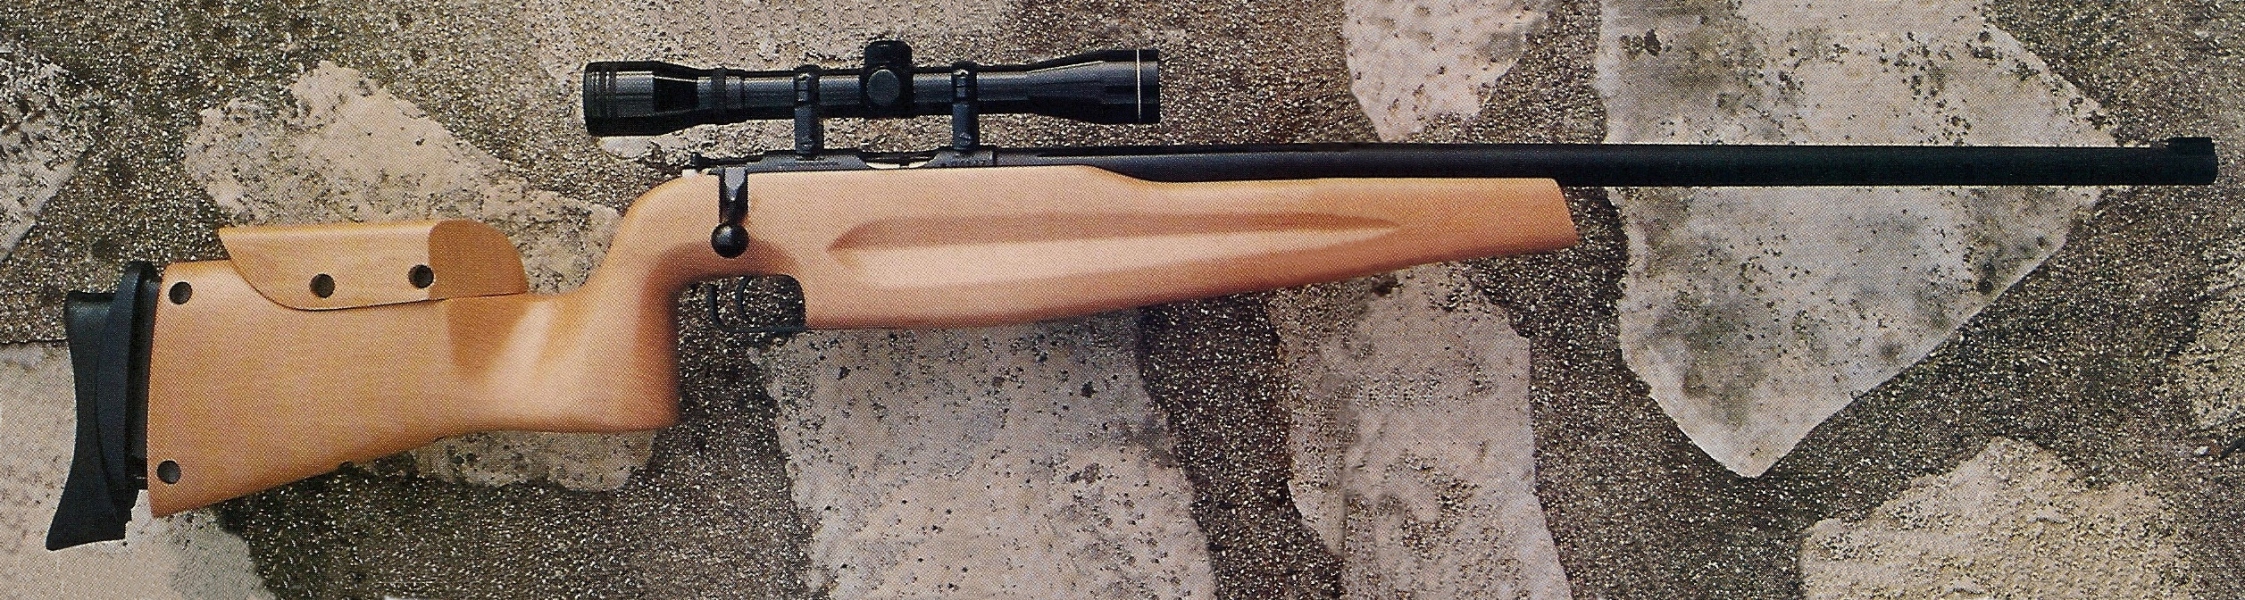 La hauteur et la position du busc, ainsi que la longueur et l'inclinaison de la plaque de couche, peuvent être réglés pour s'adapter à la morphologie du tireur.